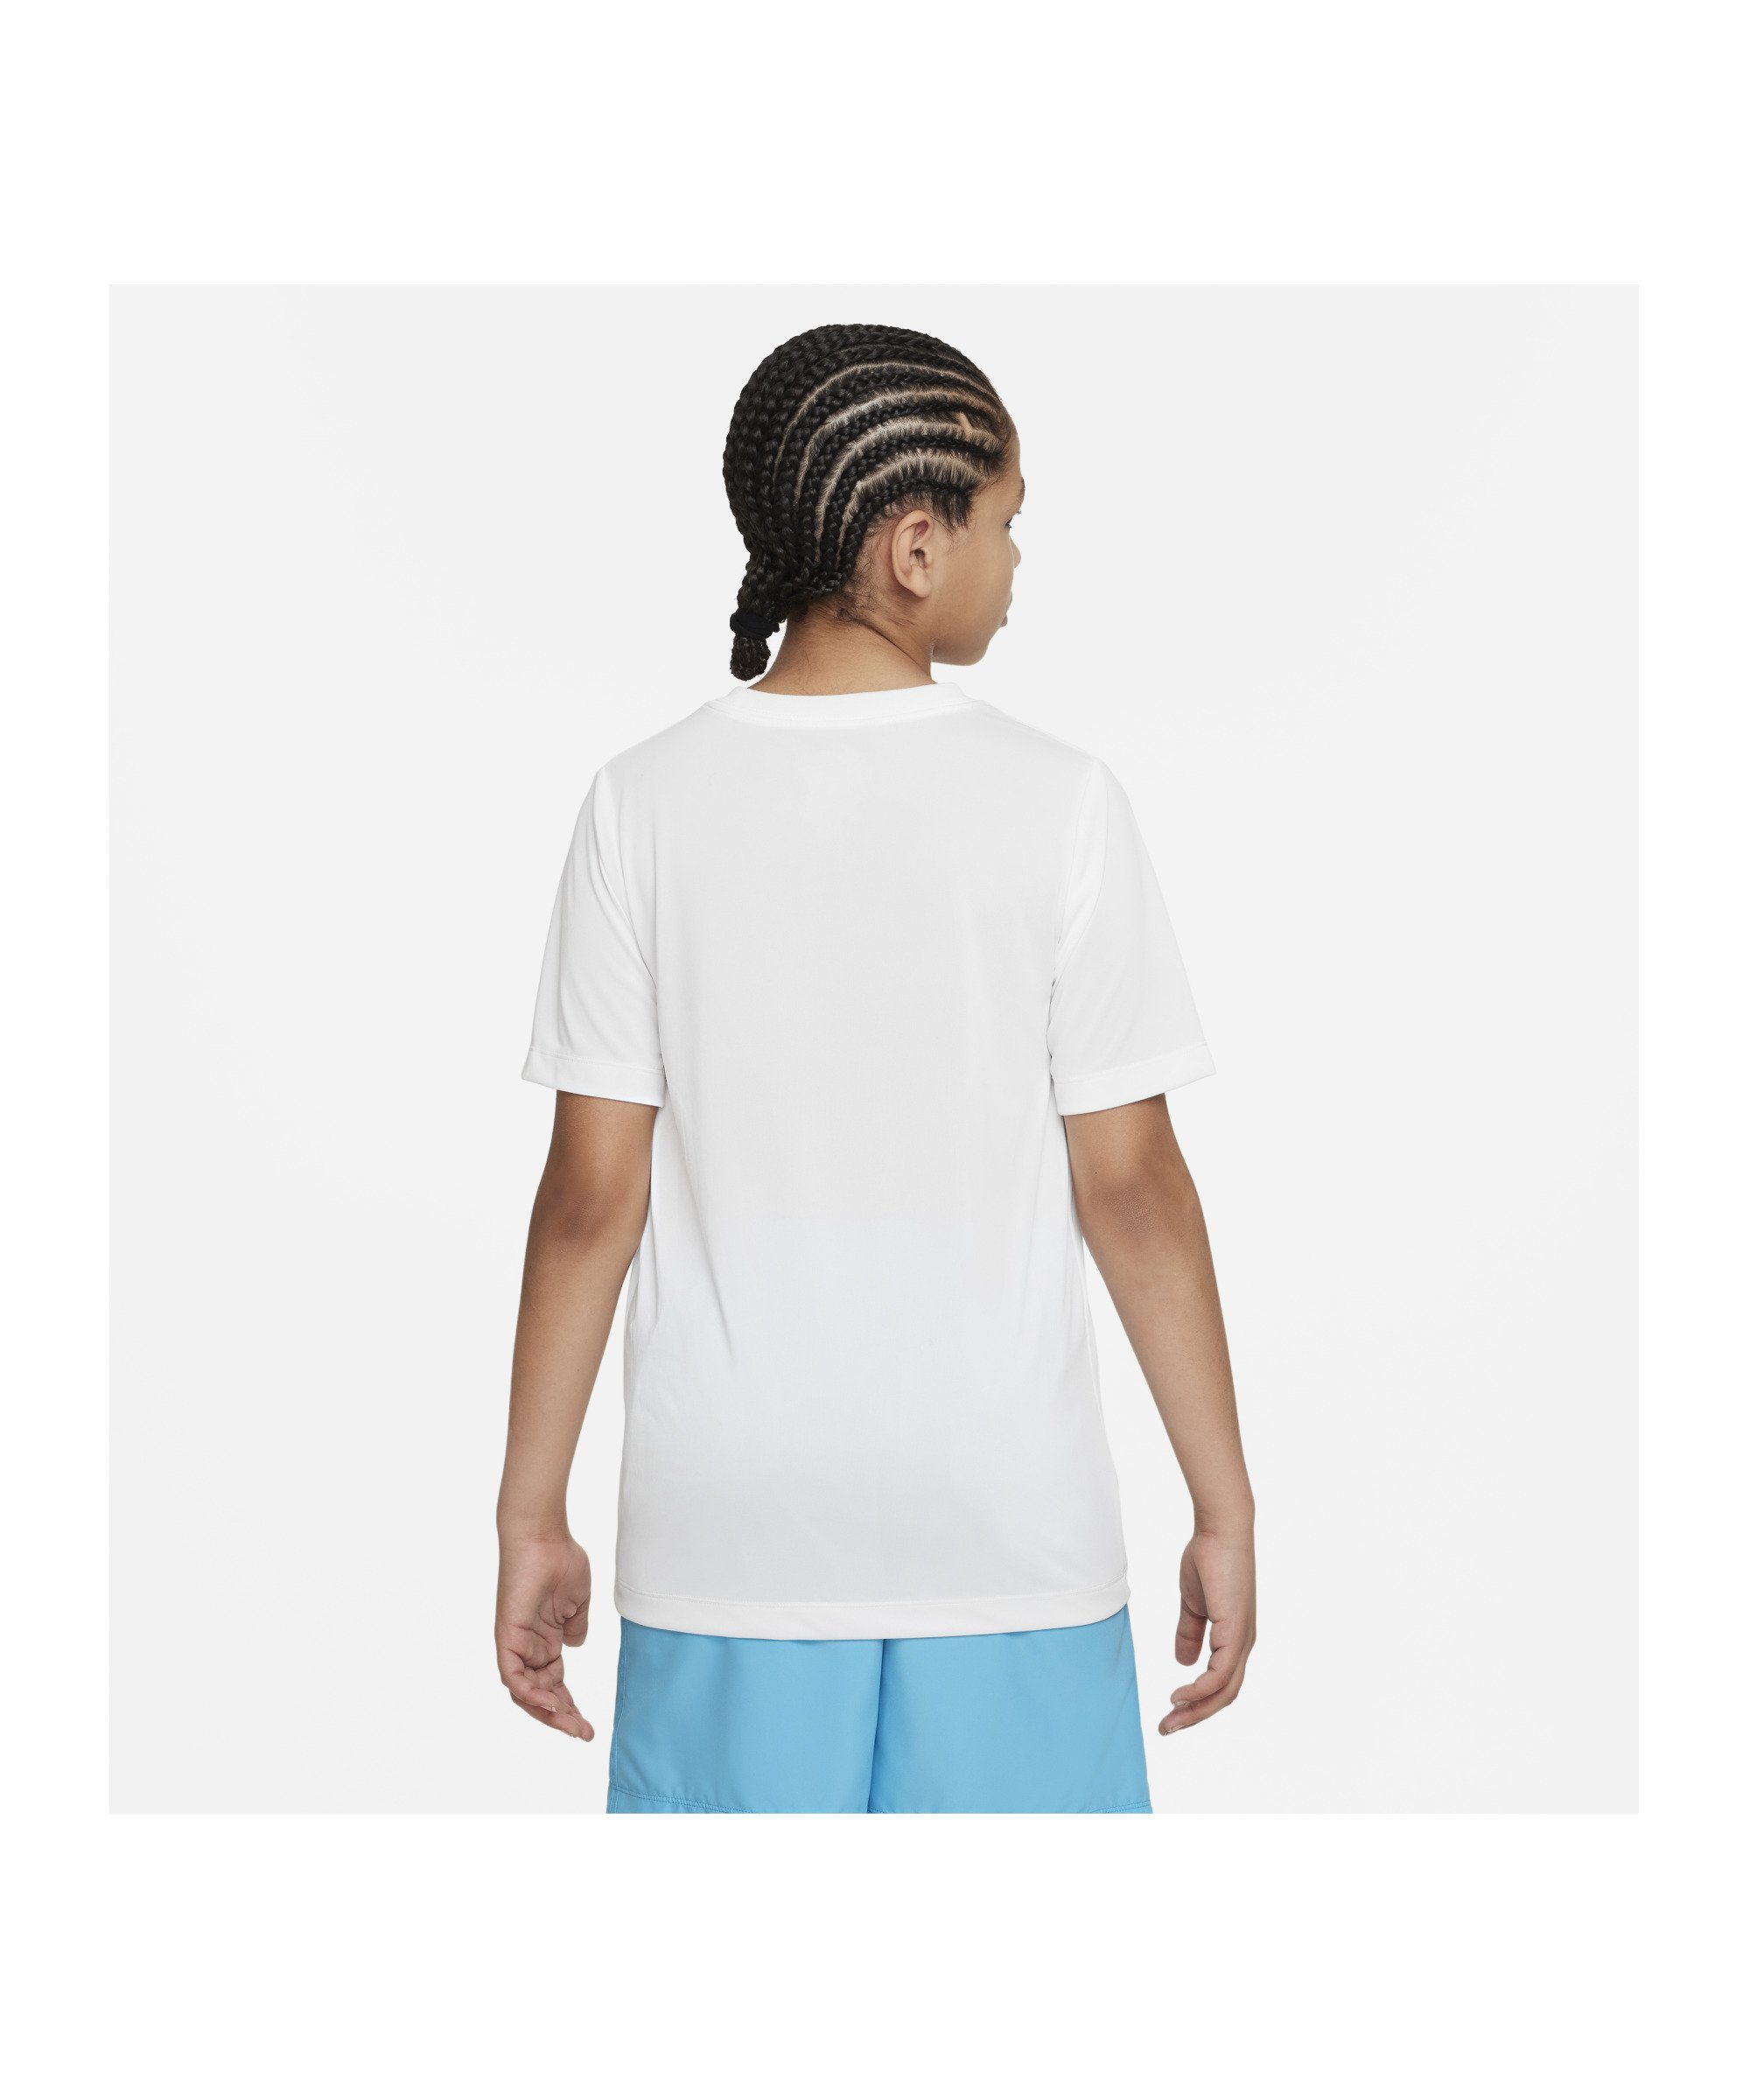 Nike Laufshirt Training T-Shirt Kids weiss default